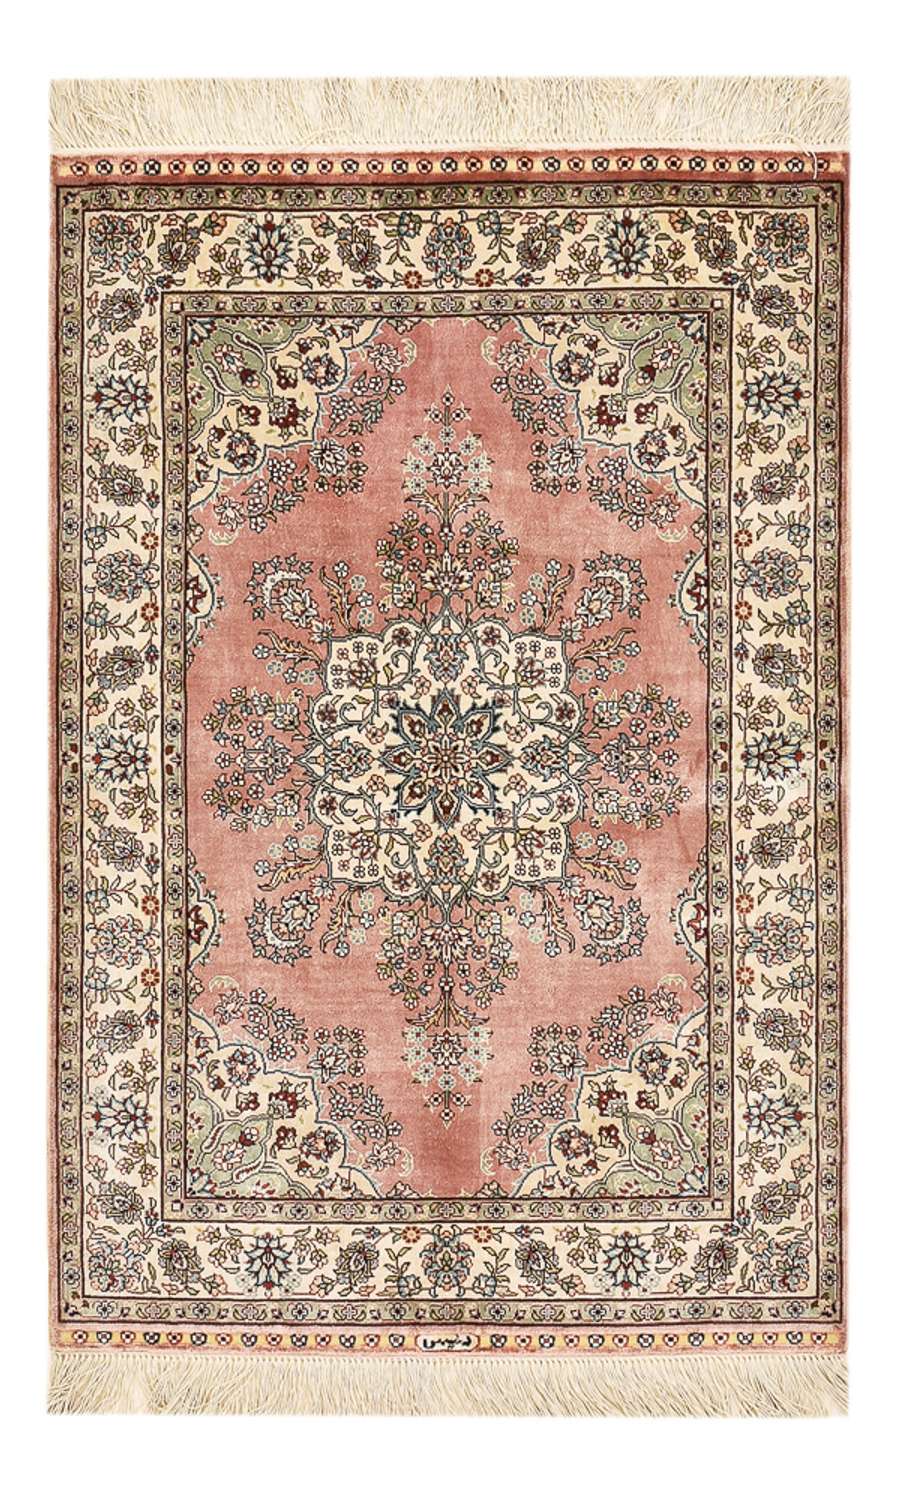 Tapis persan - Nomadic - 93 x 62 cm - rose